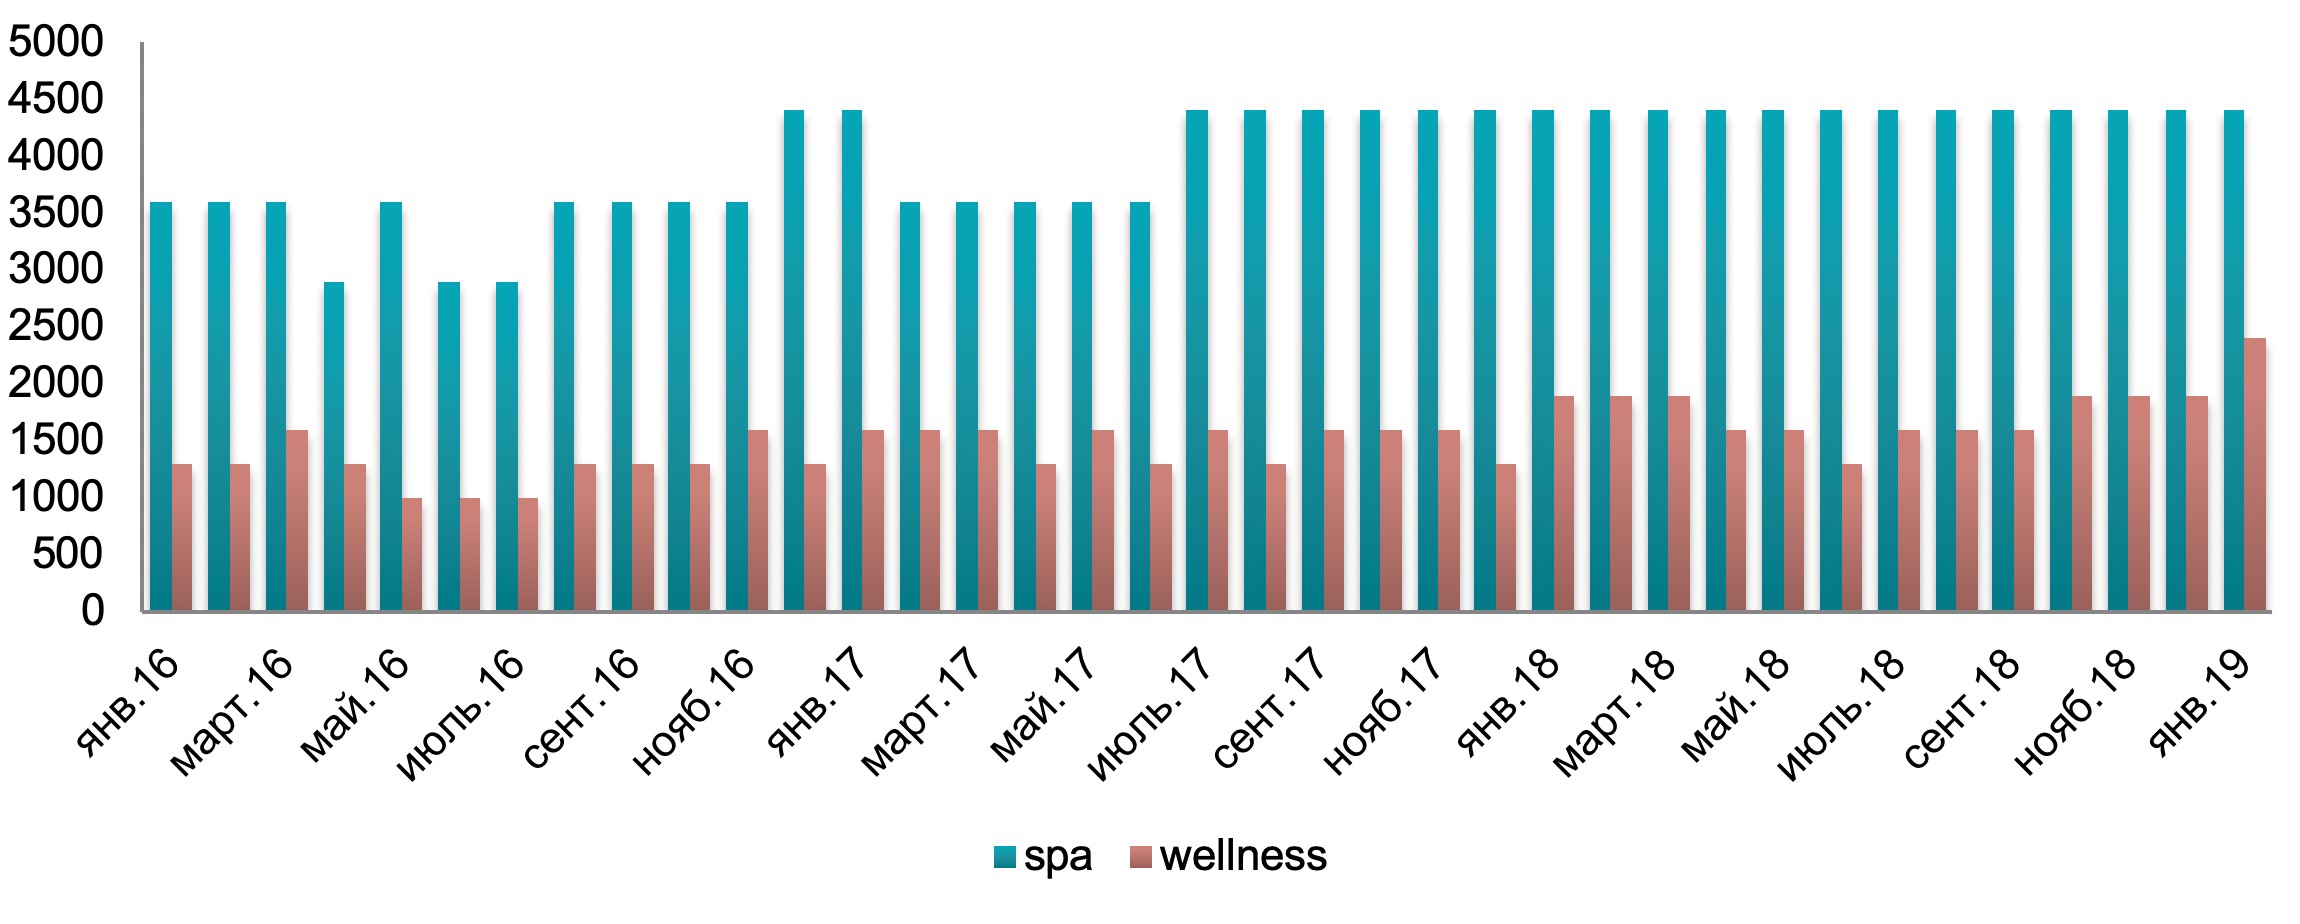 Тенденции развития рынка wellness и SPA в Украине